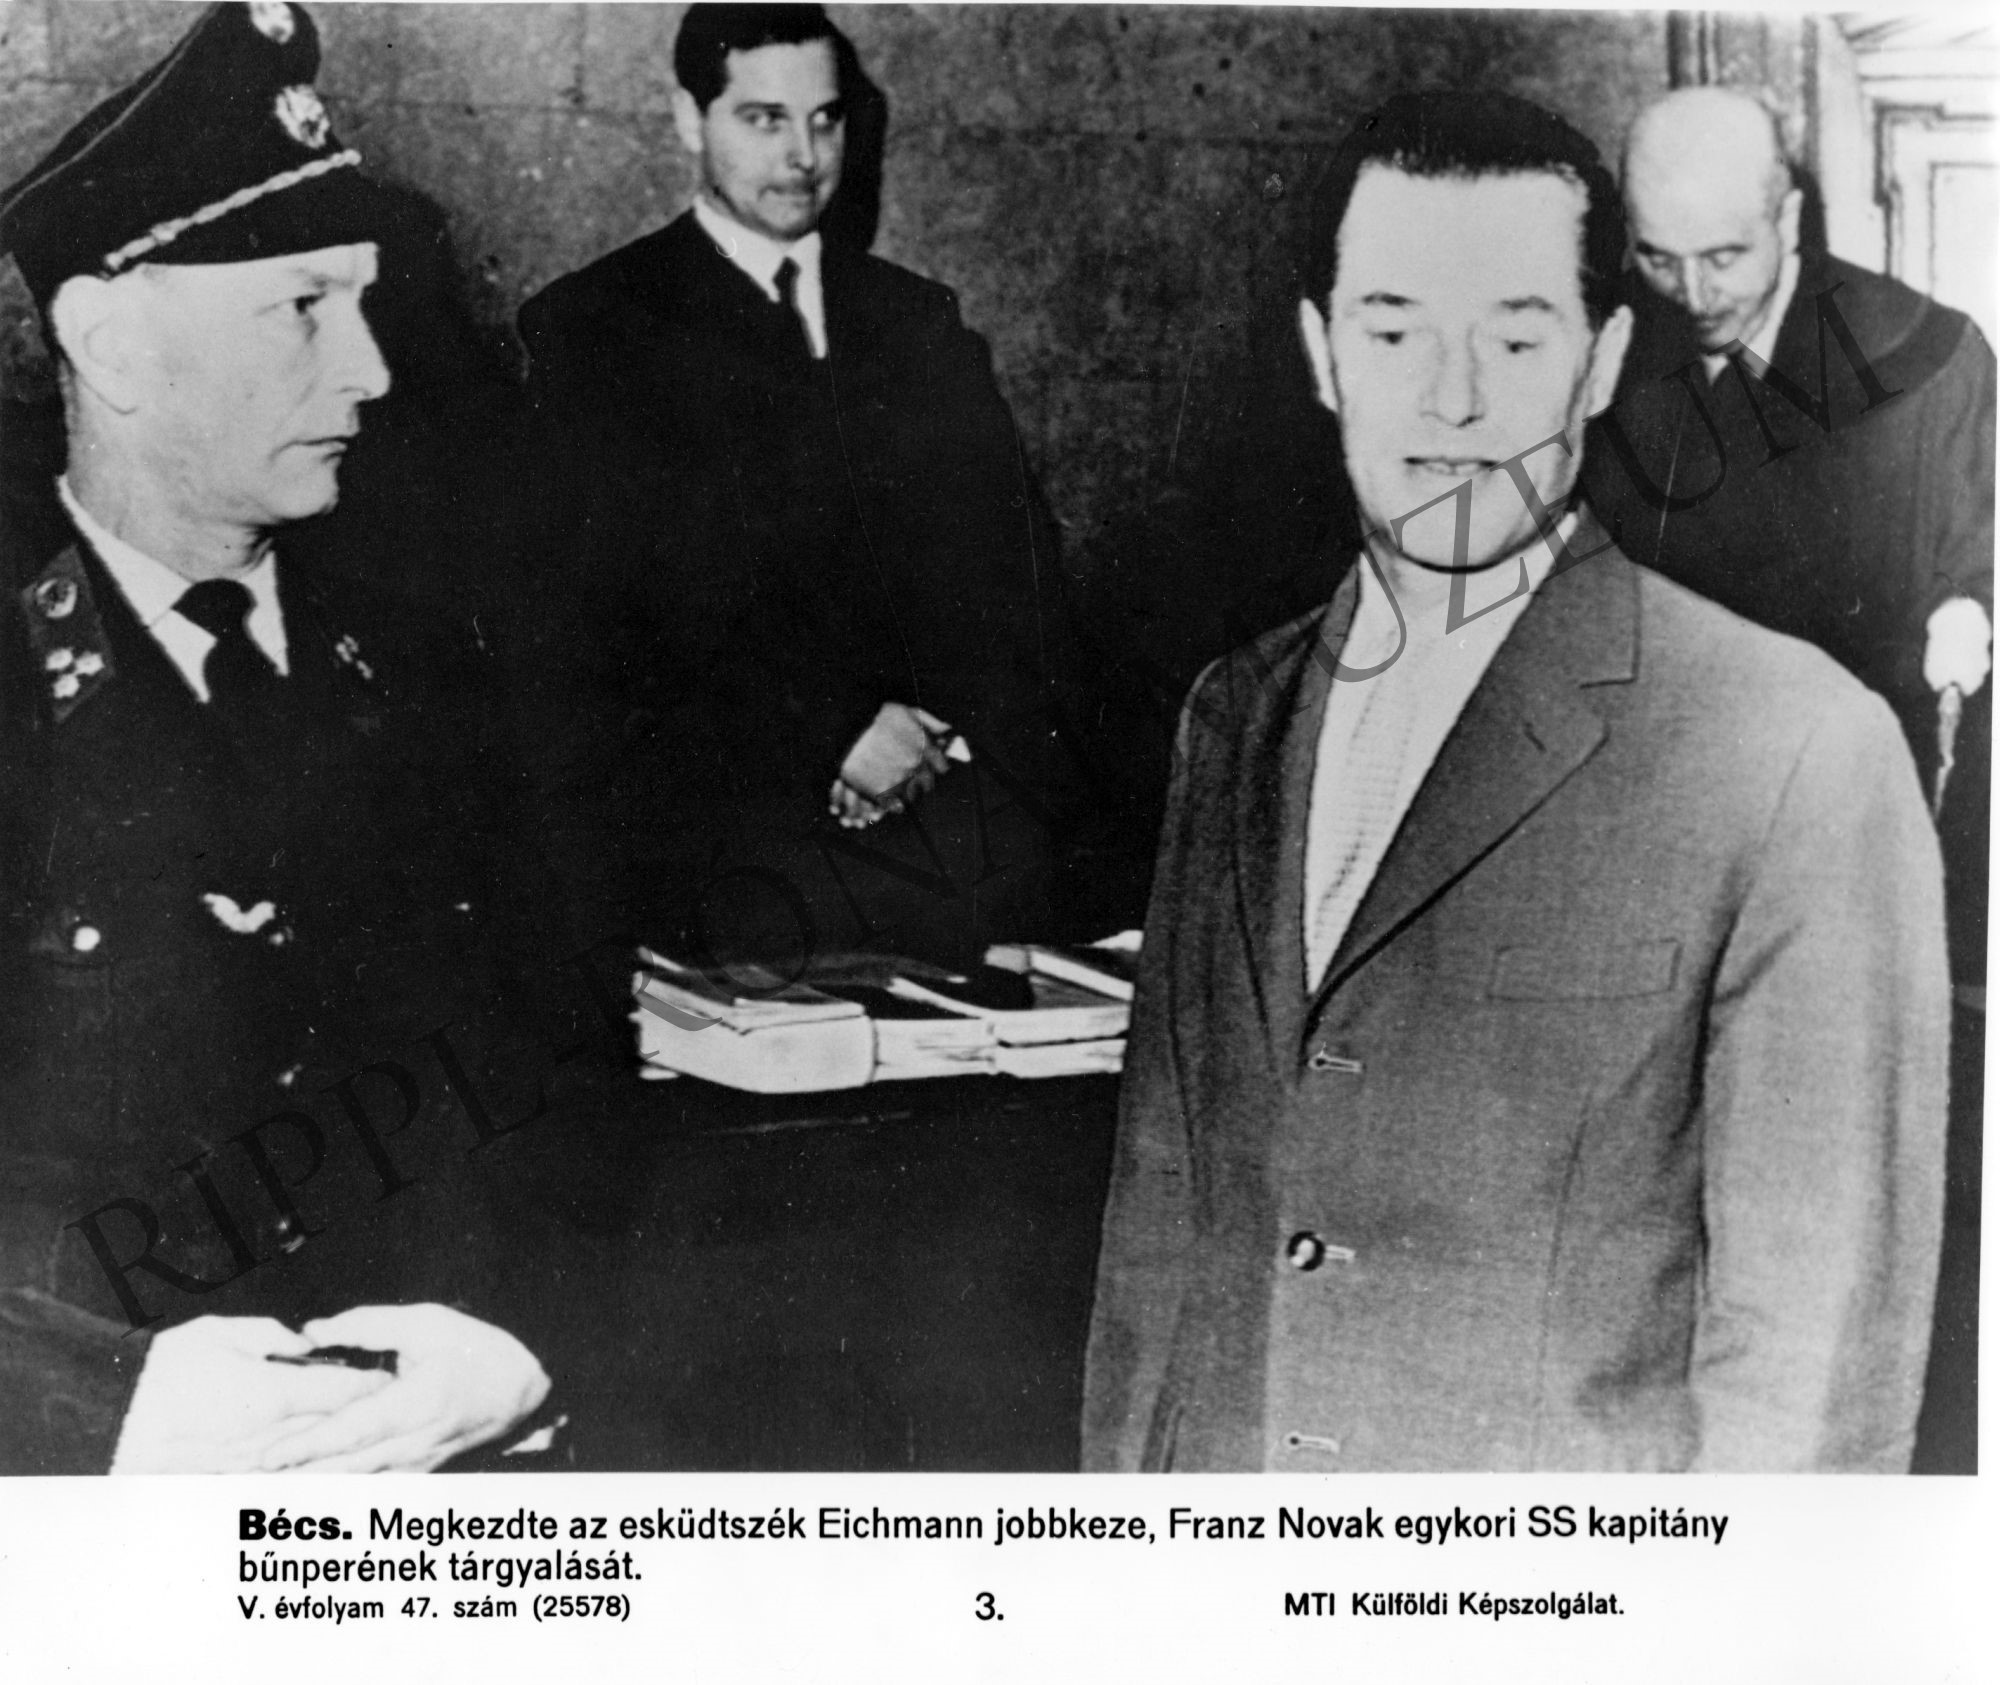 Franz Novak egykori SS kapitány, Eichmann egykori jobbkeze az esküdtszéki tárgyaláson (Rippl-Rónai Múzeum CC BY-NC-SA)